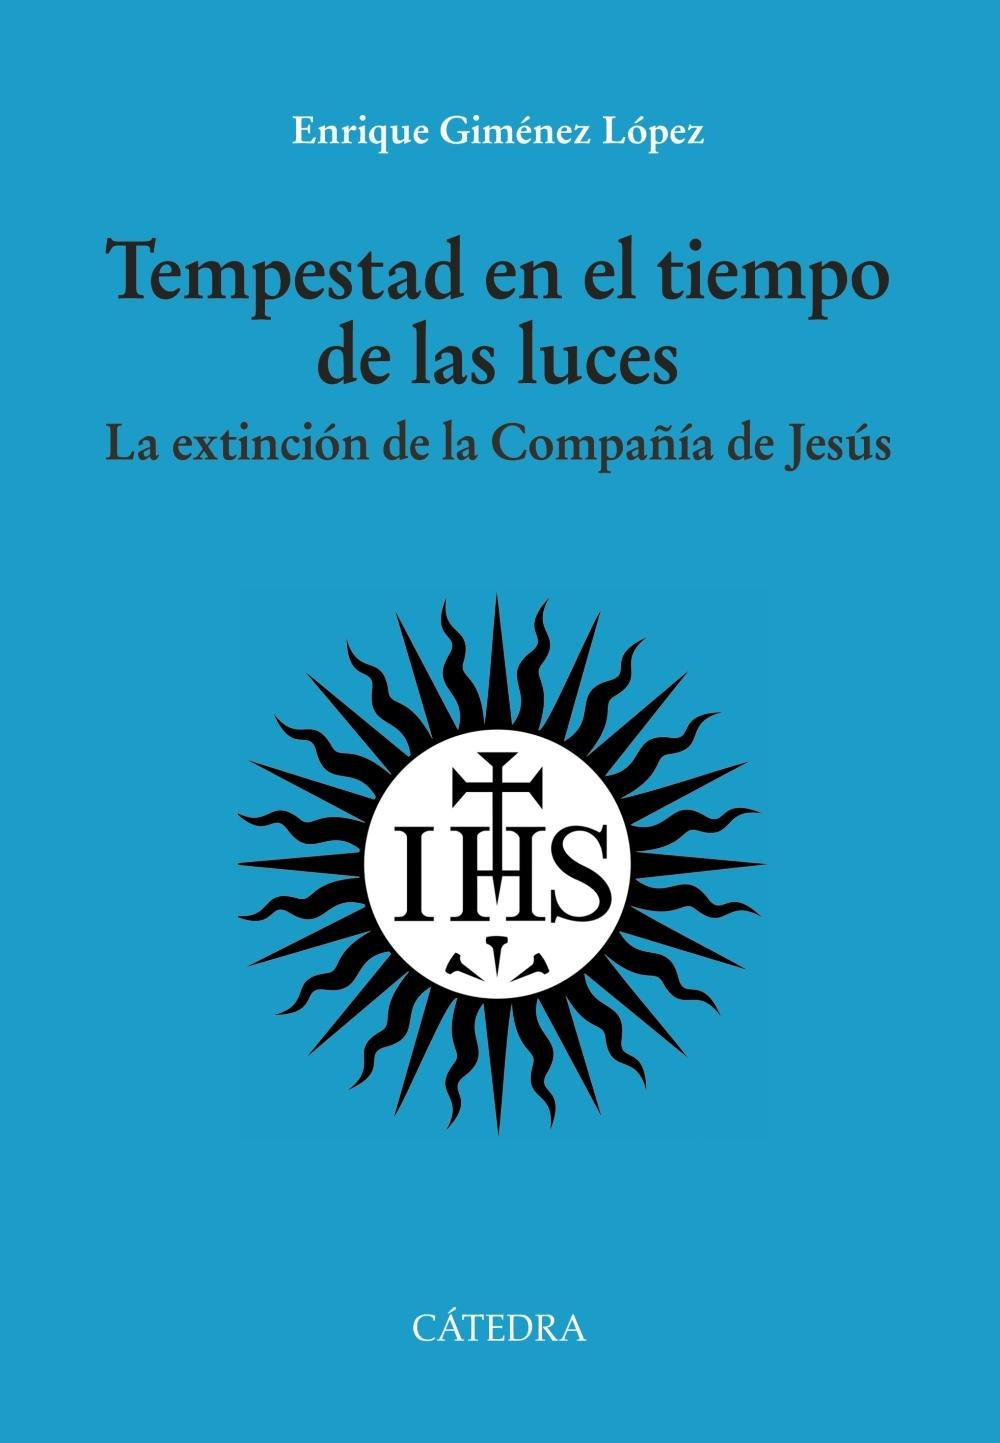 Tempestad en el tiempo de las luces "La extinción de la Compañía de Jesús". 